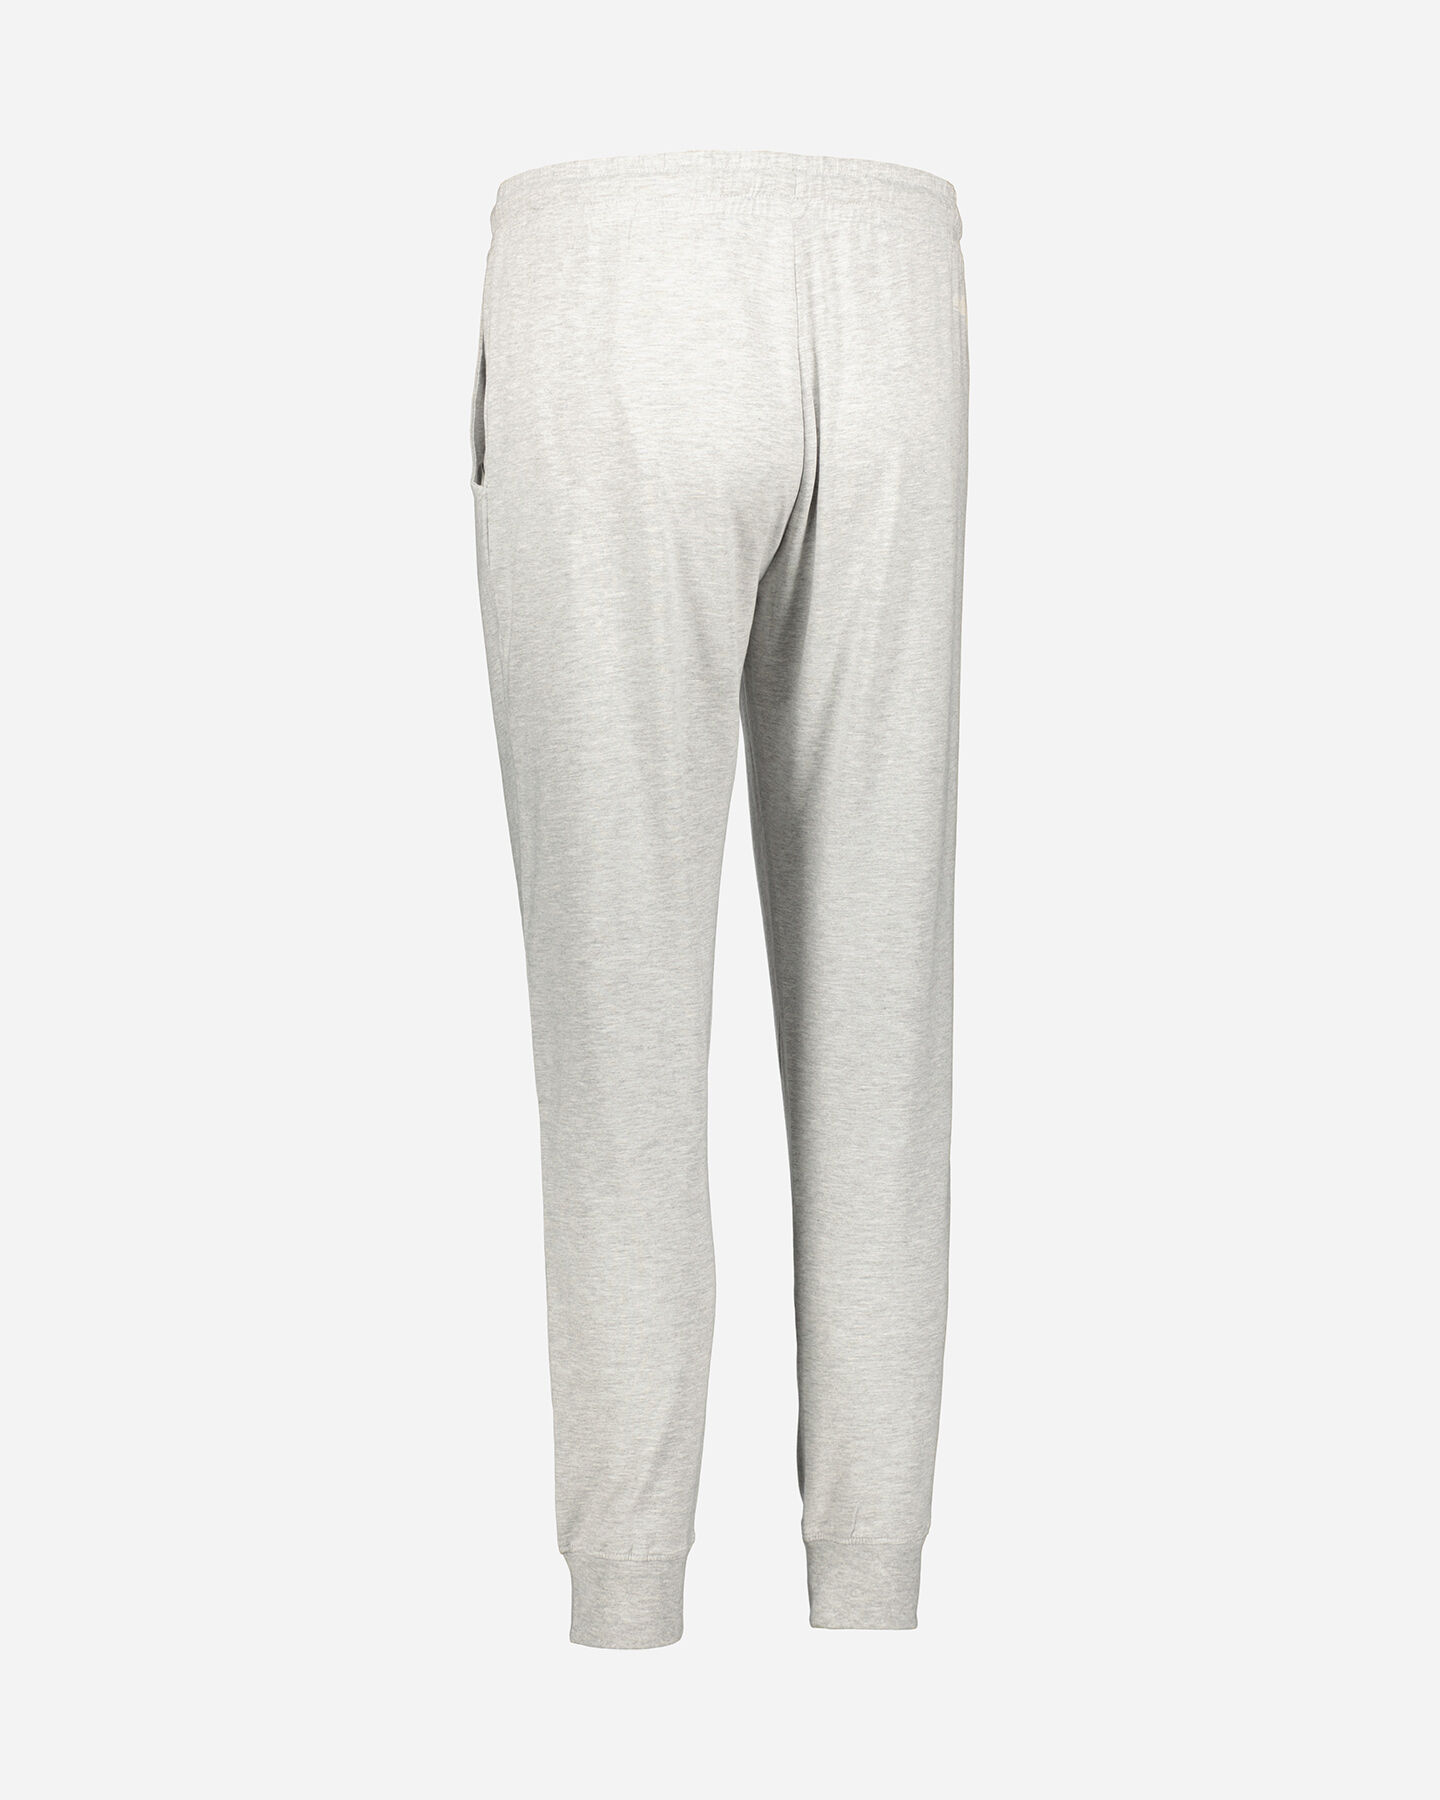  Pantalone ADMIRAL CLASSIC LOGO W S4118881|GM01|XL scatto 2